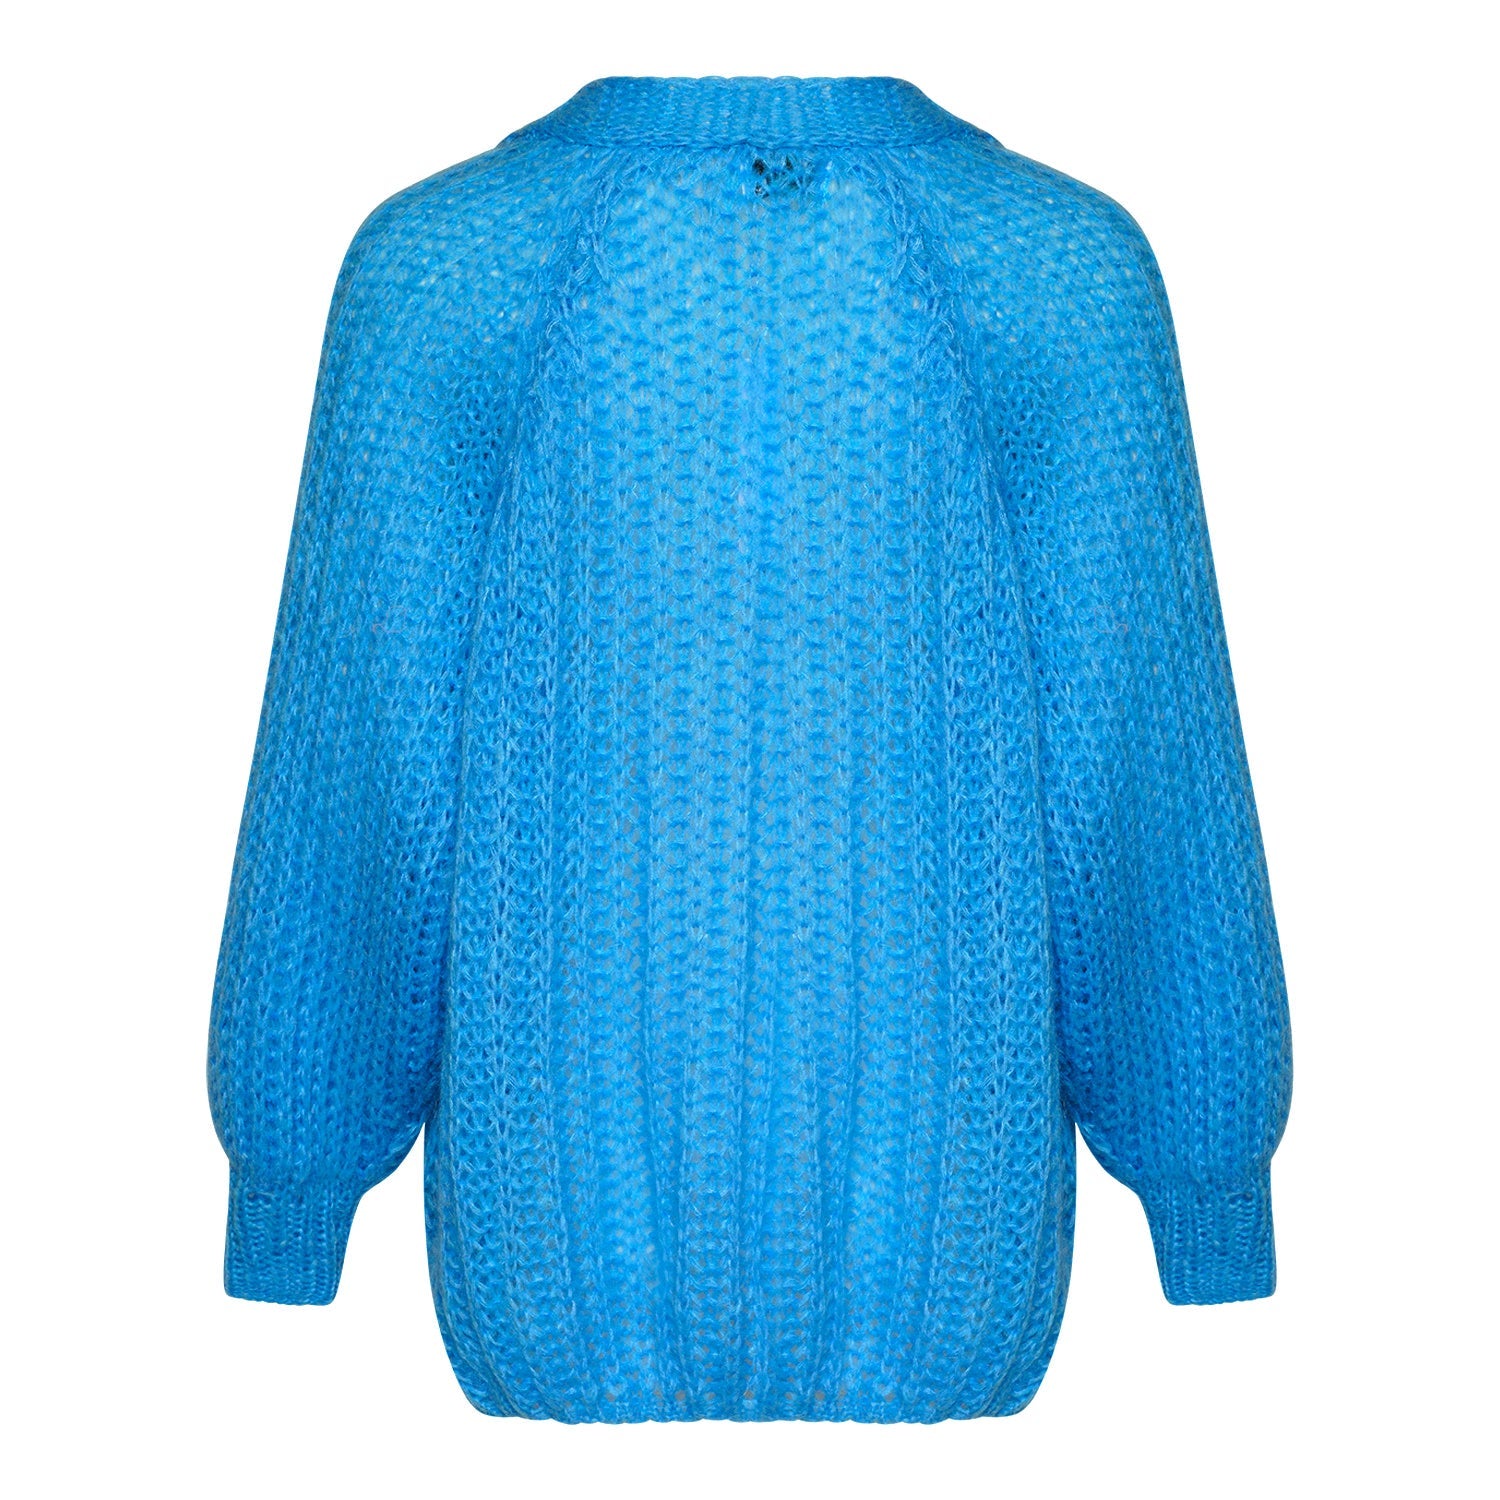 Noella - Joseph knit cardigan, sky blue by Noella | stylebykul